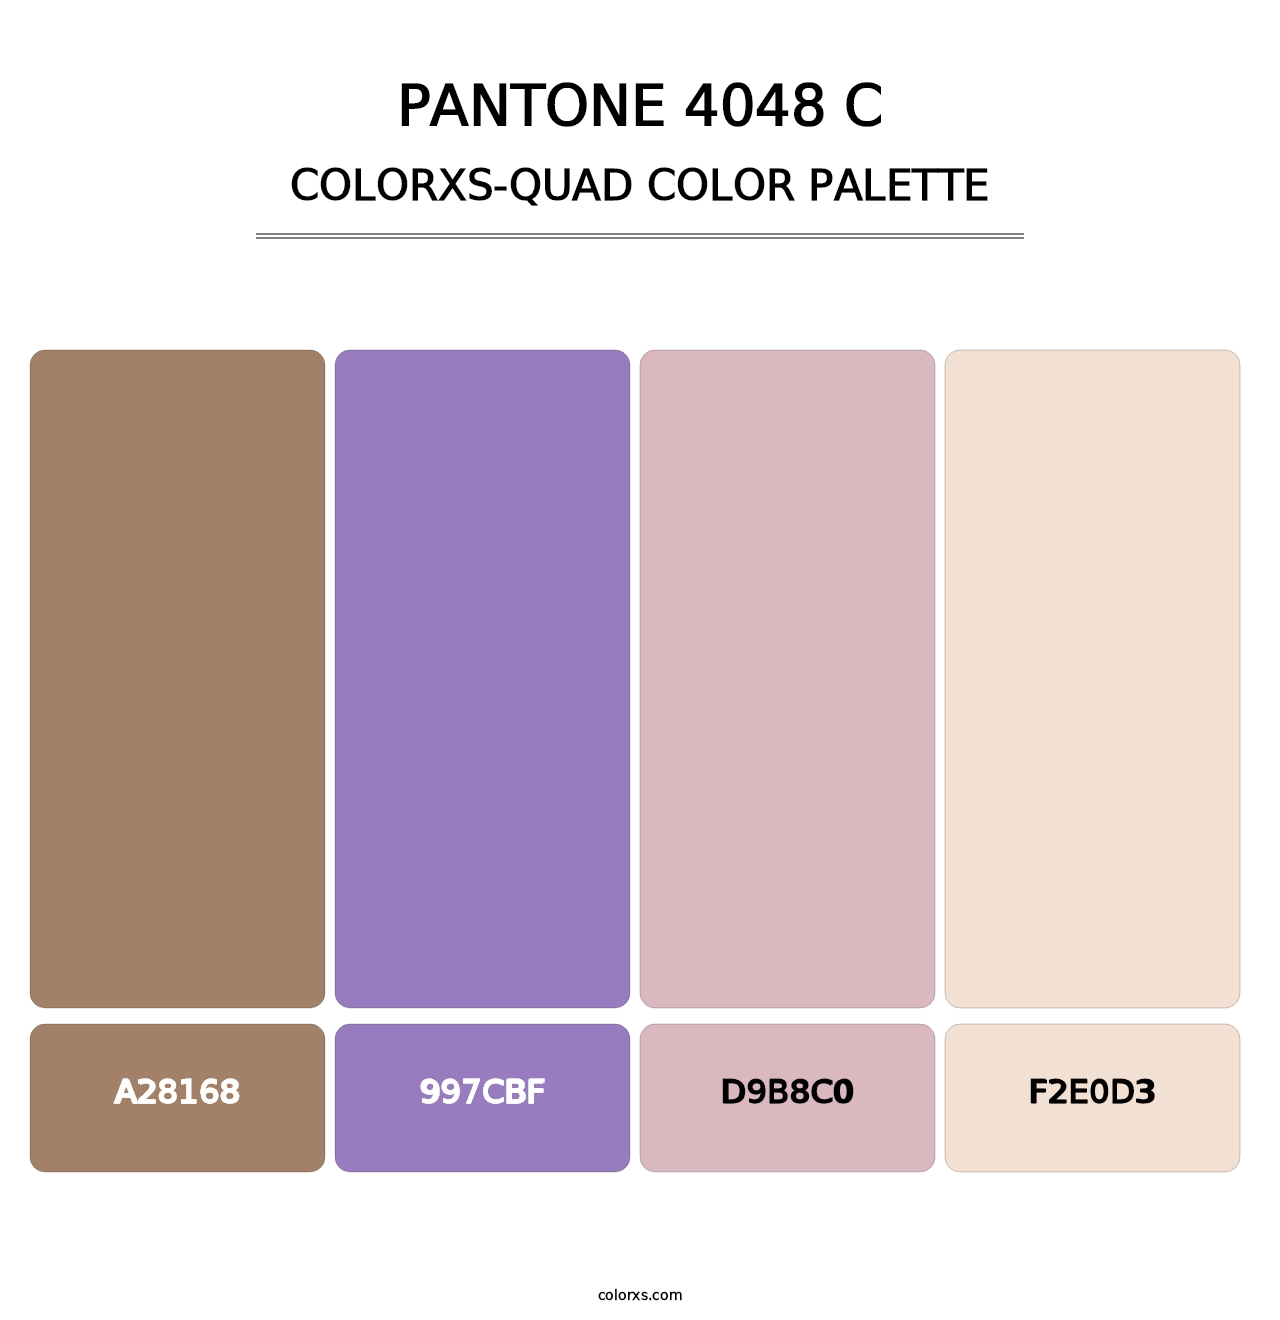 PANTONE 4048 C - Colorxs Quad Palette